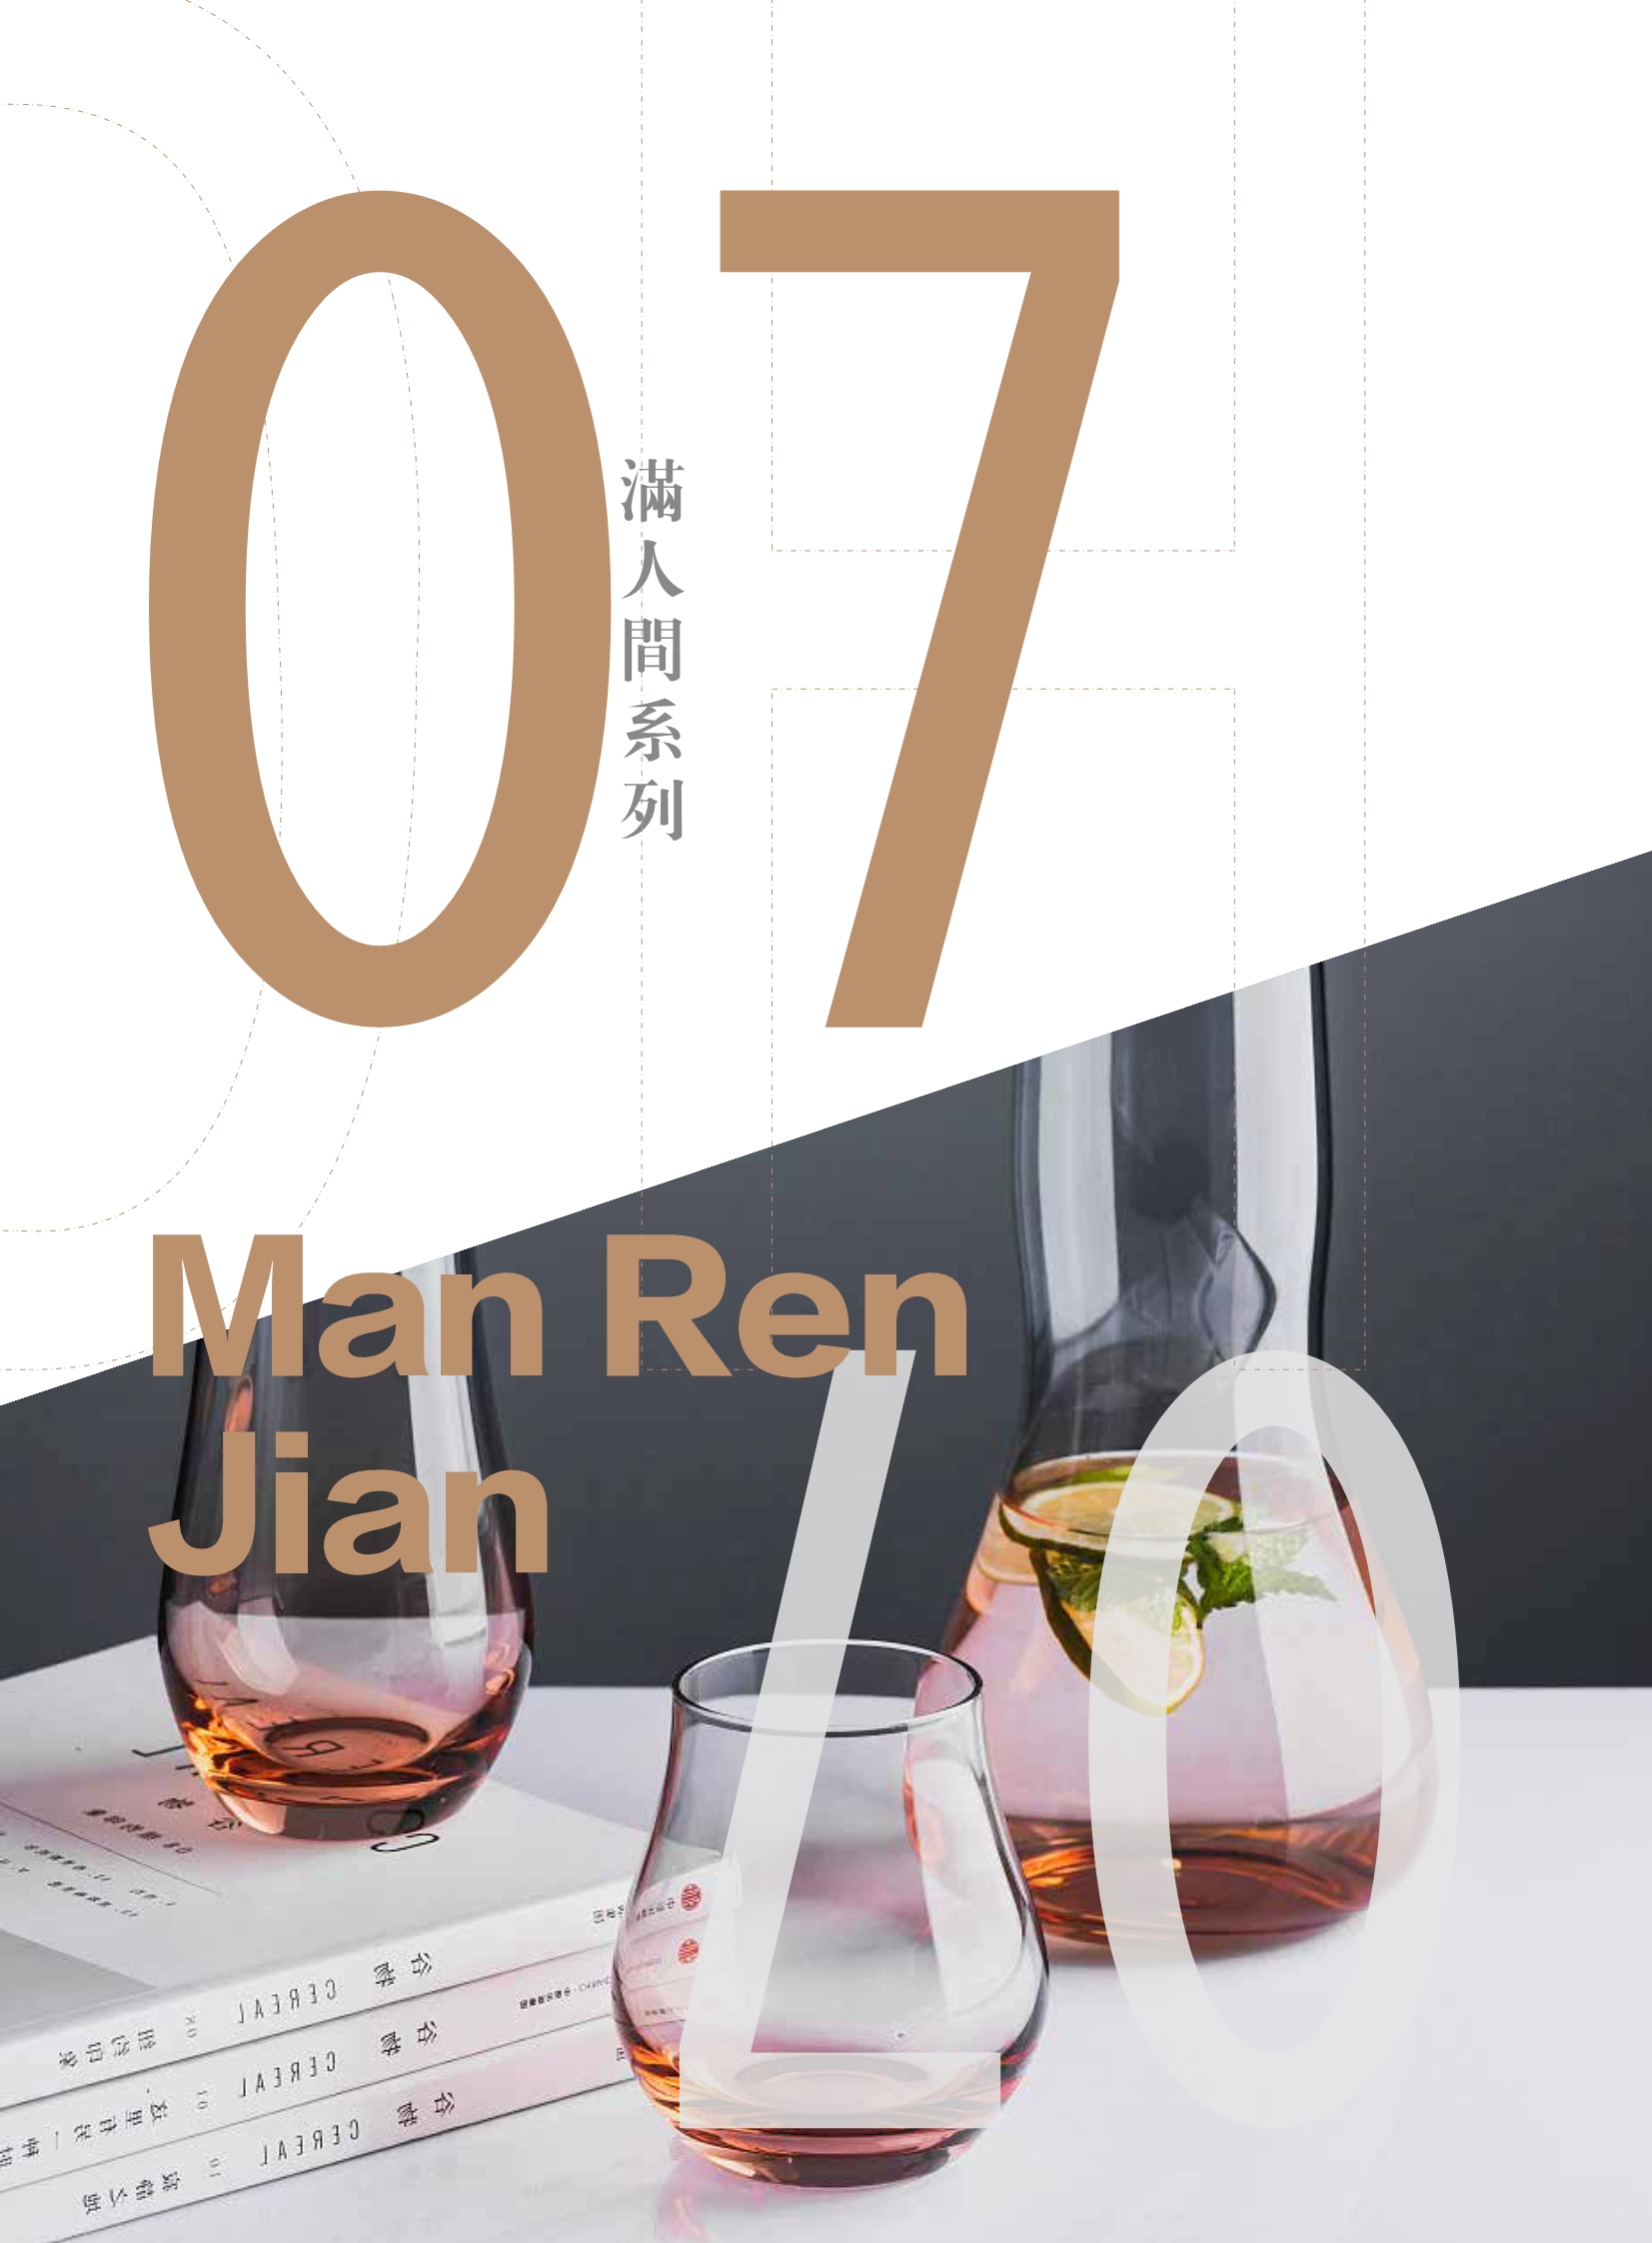 Man Ren Jian